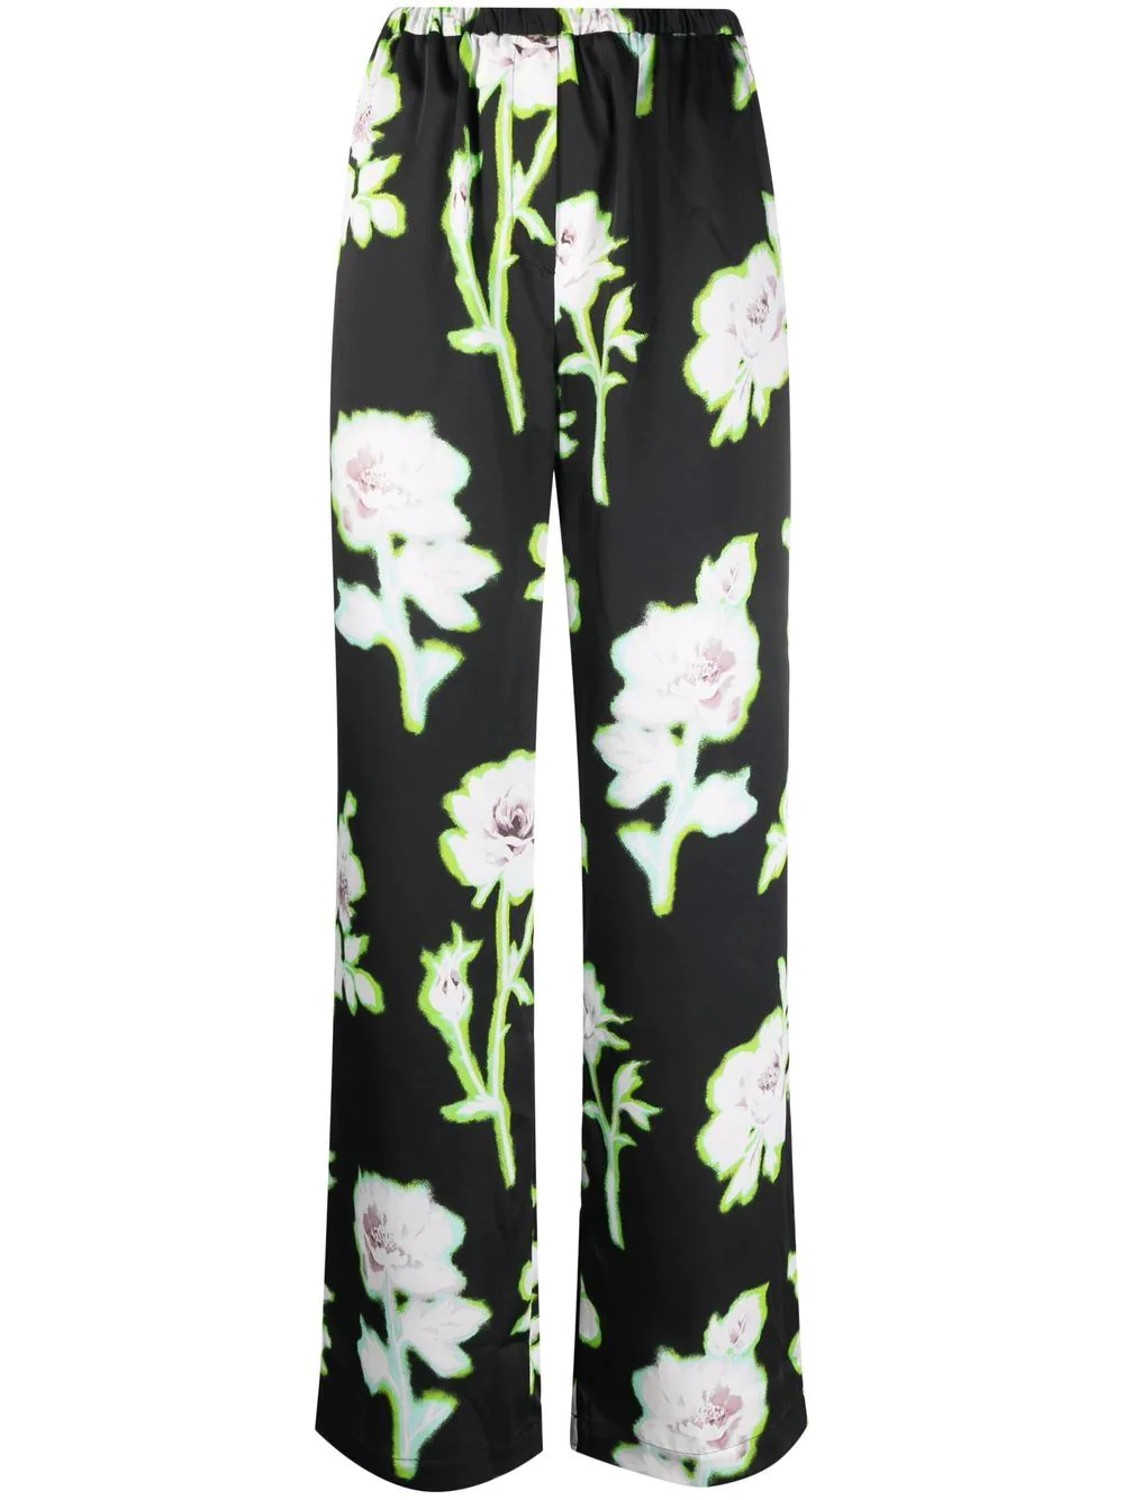 shop MSGM Saldi Pantaloni: Pantaloni MSGM, gamba ampia, elastico in vita, tasche laterali, stampa fiori pixel.

Composizione: 100% poliestere. number 2236